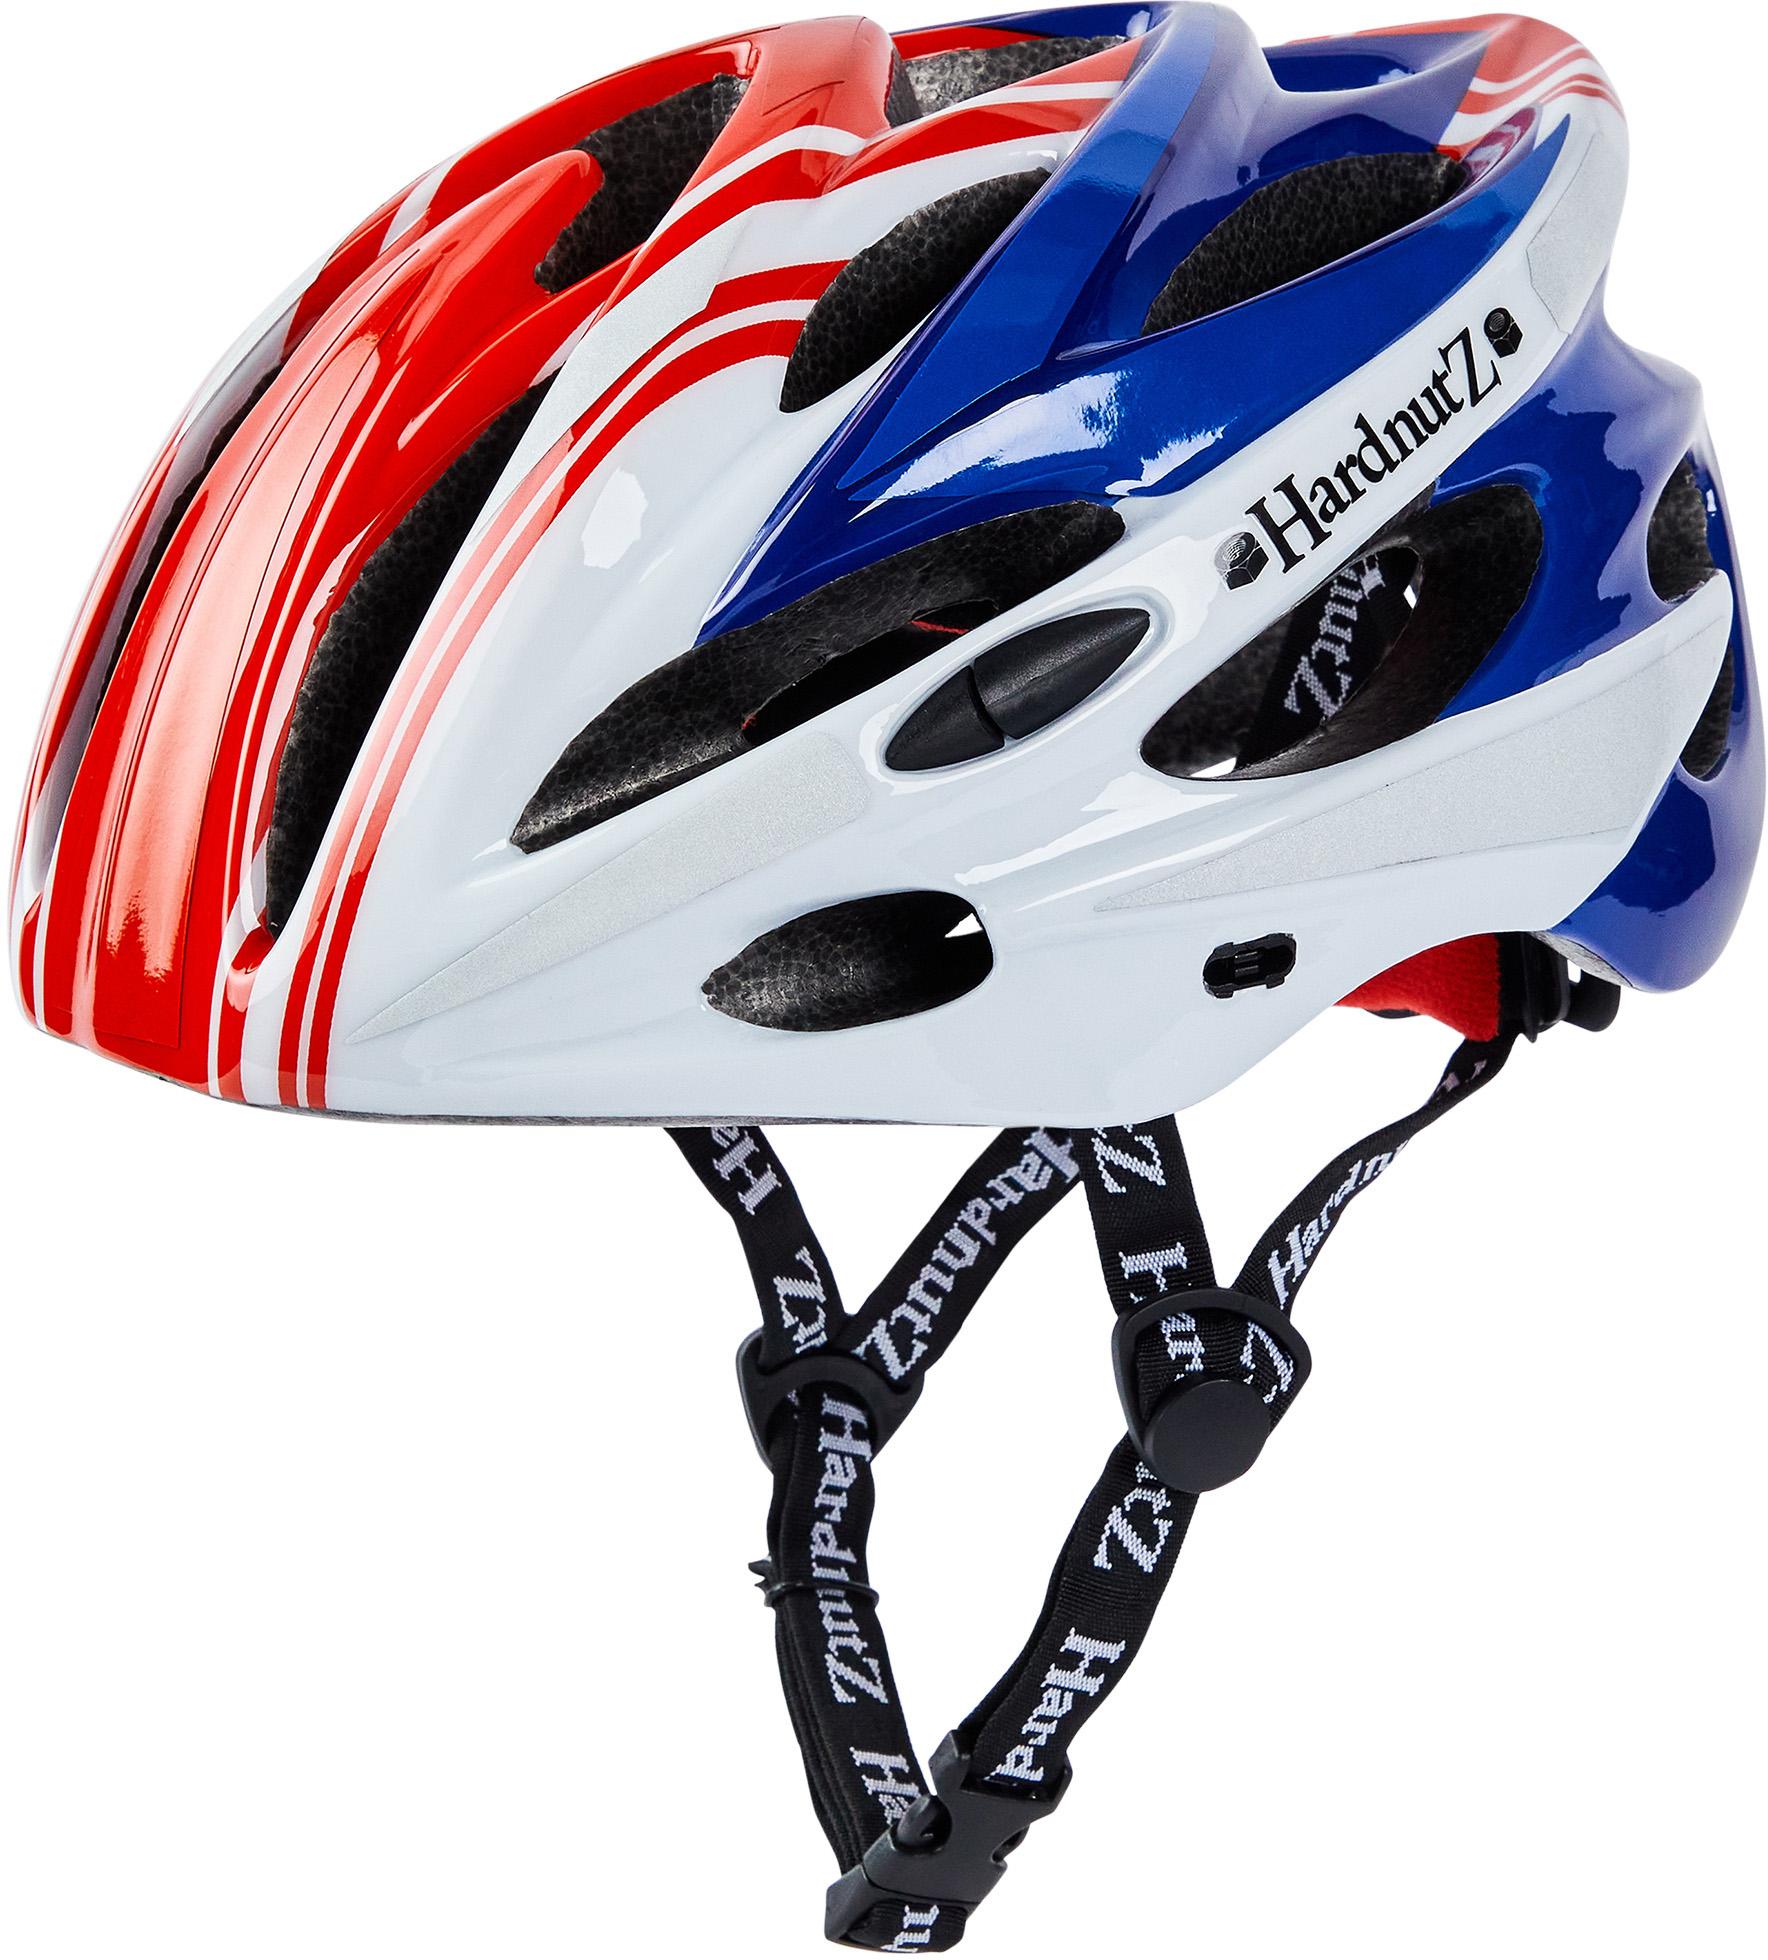 Hardnutz Stealth Hi-Vis Cycle Helmet, Red/White/Blue